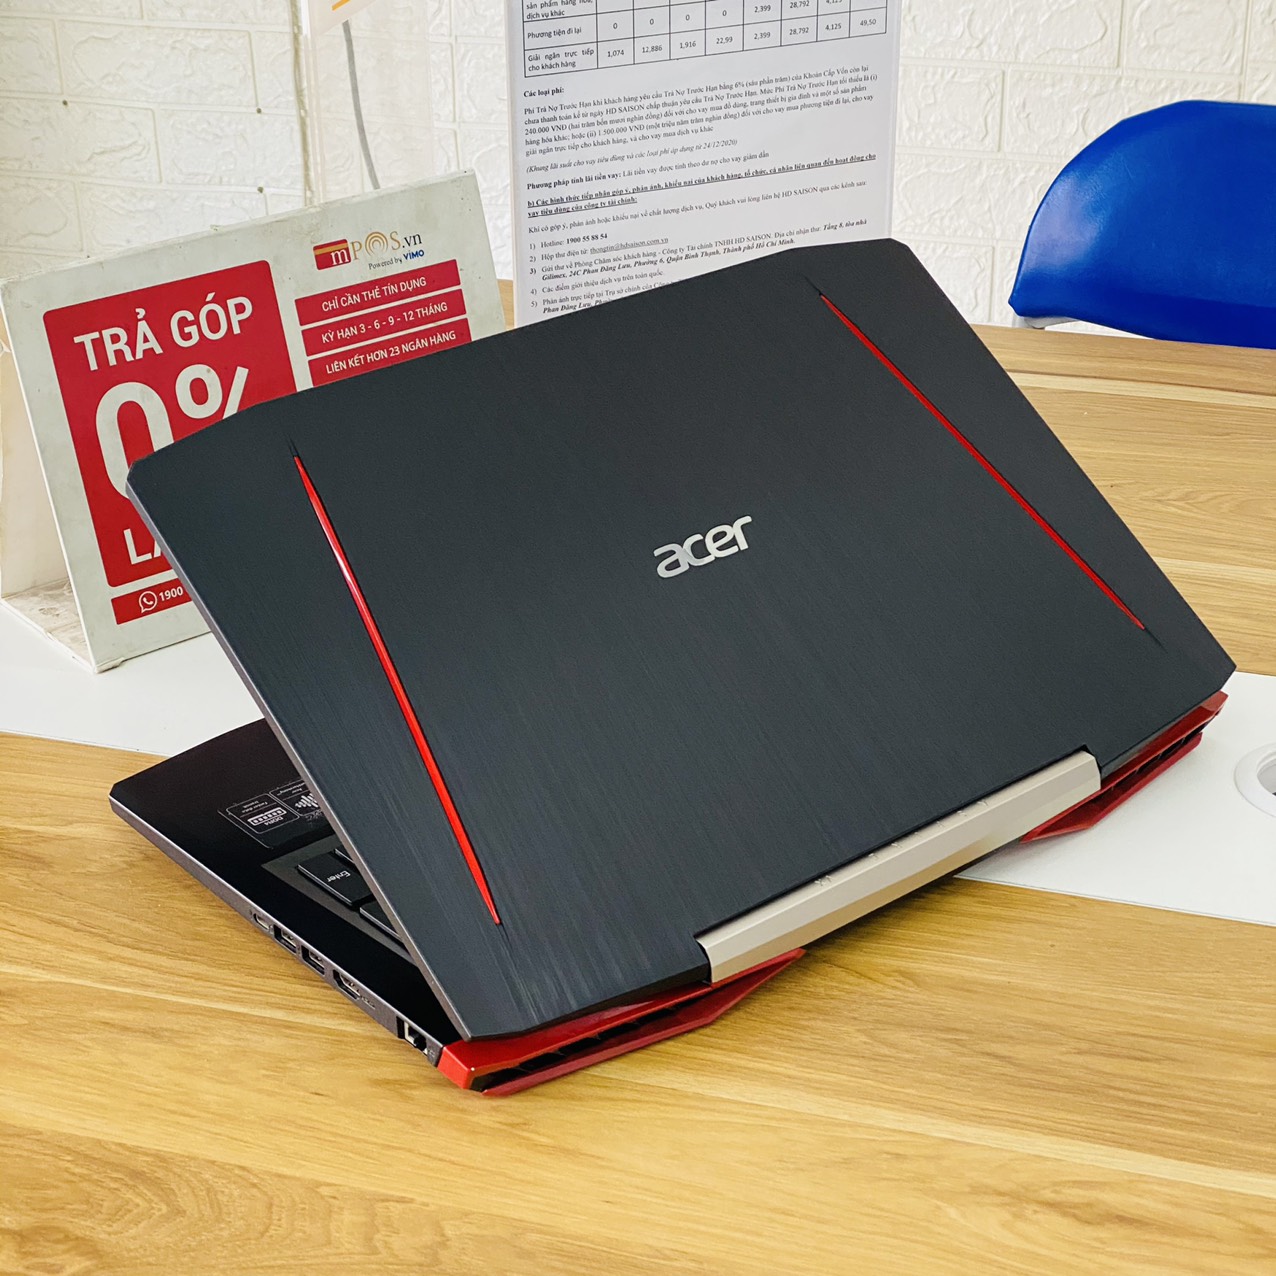 Laptop Gaming Acer Aspire VX5-591G i7-7700HQ Ram 8G SSD 128G+HDD 1TB Nvidia GTX 1050 15.6 inch Full HD